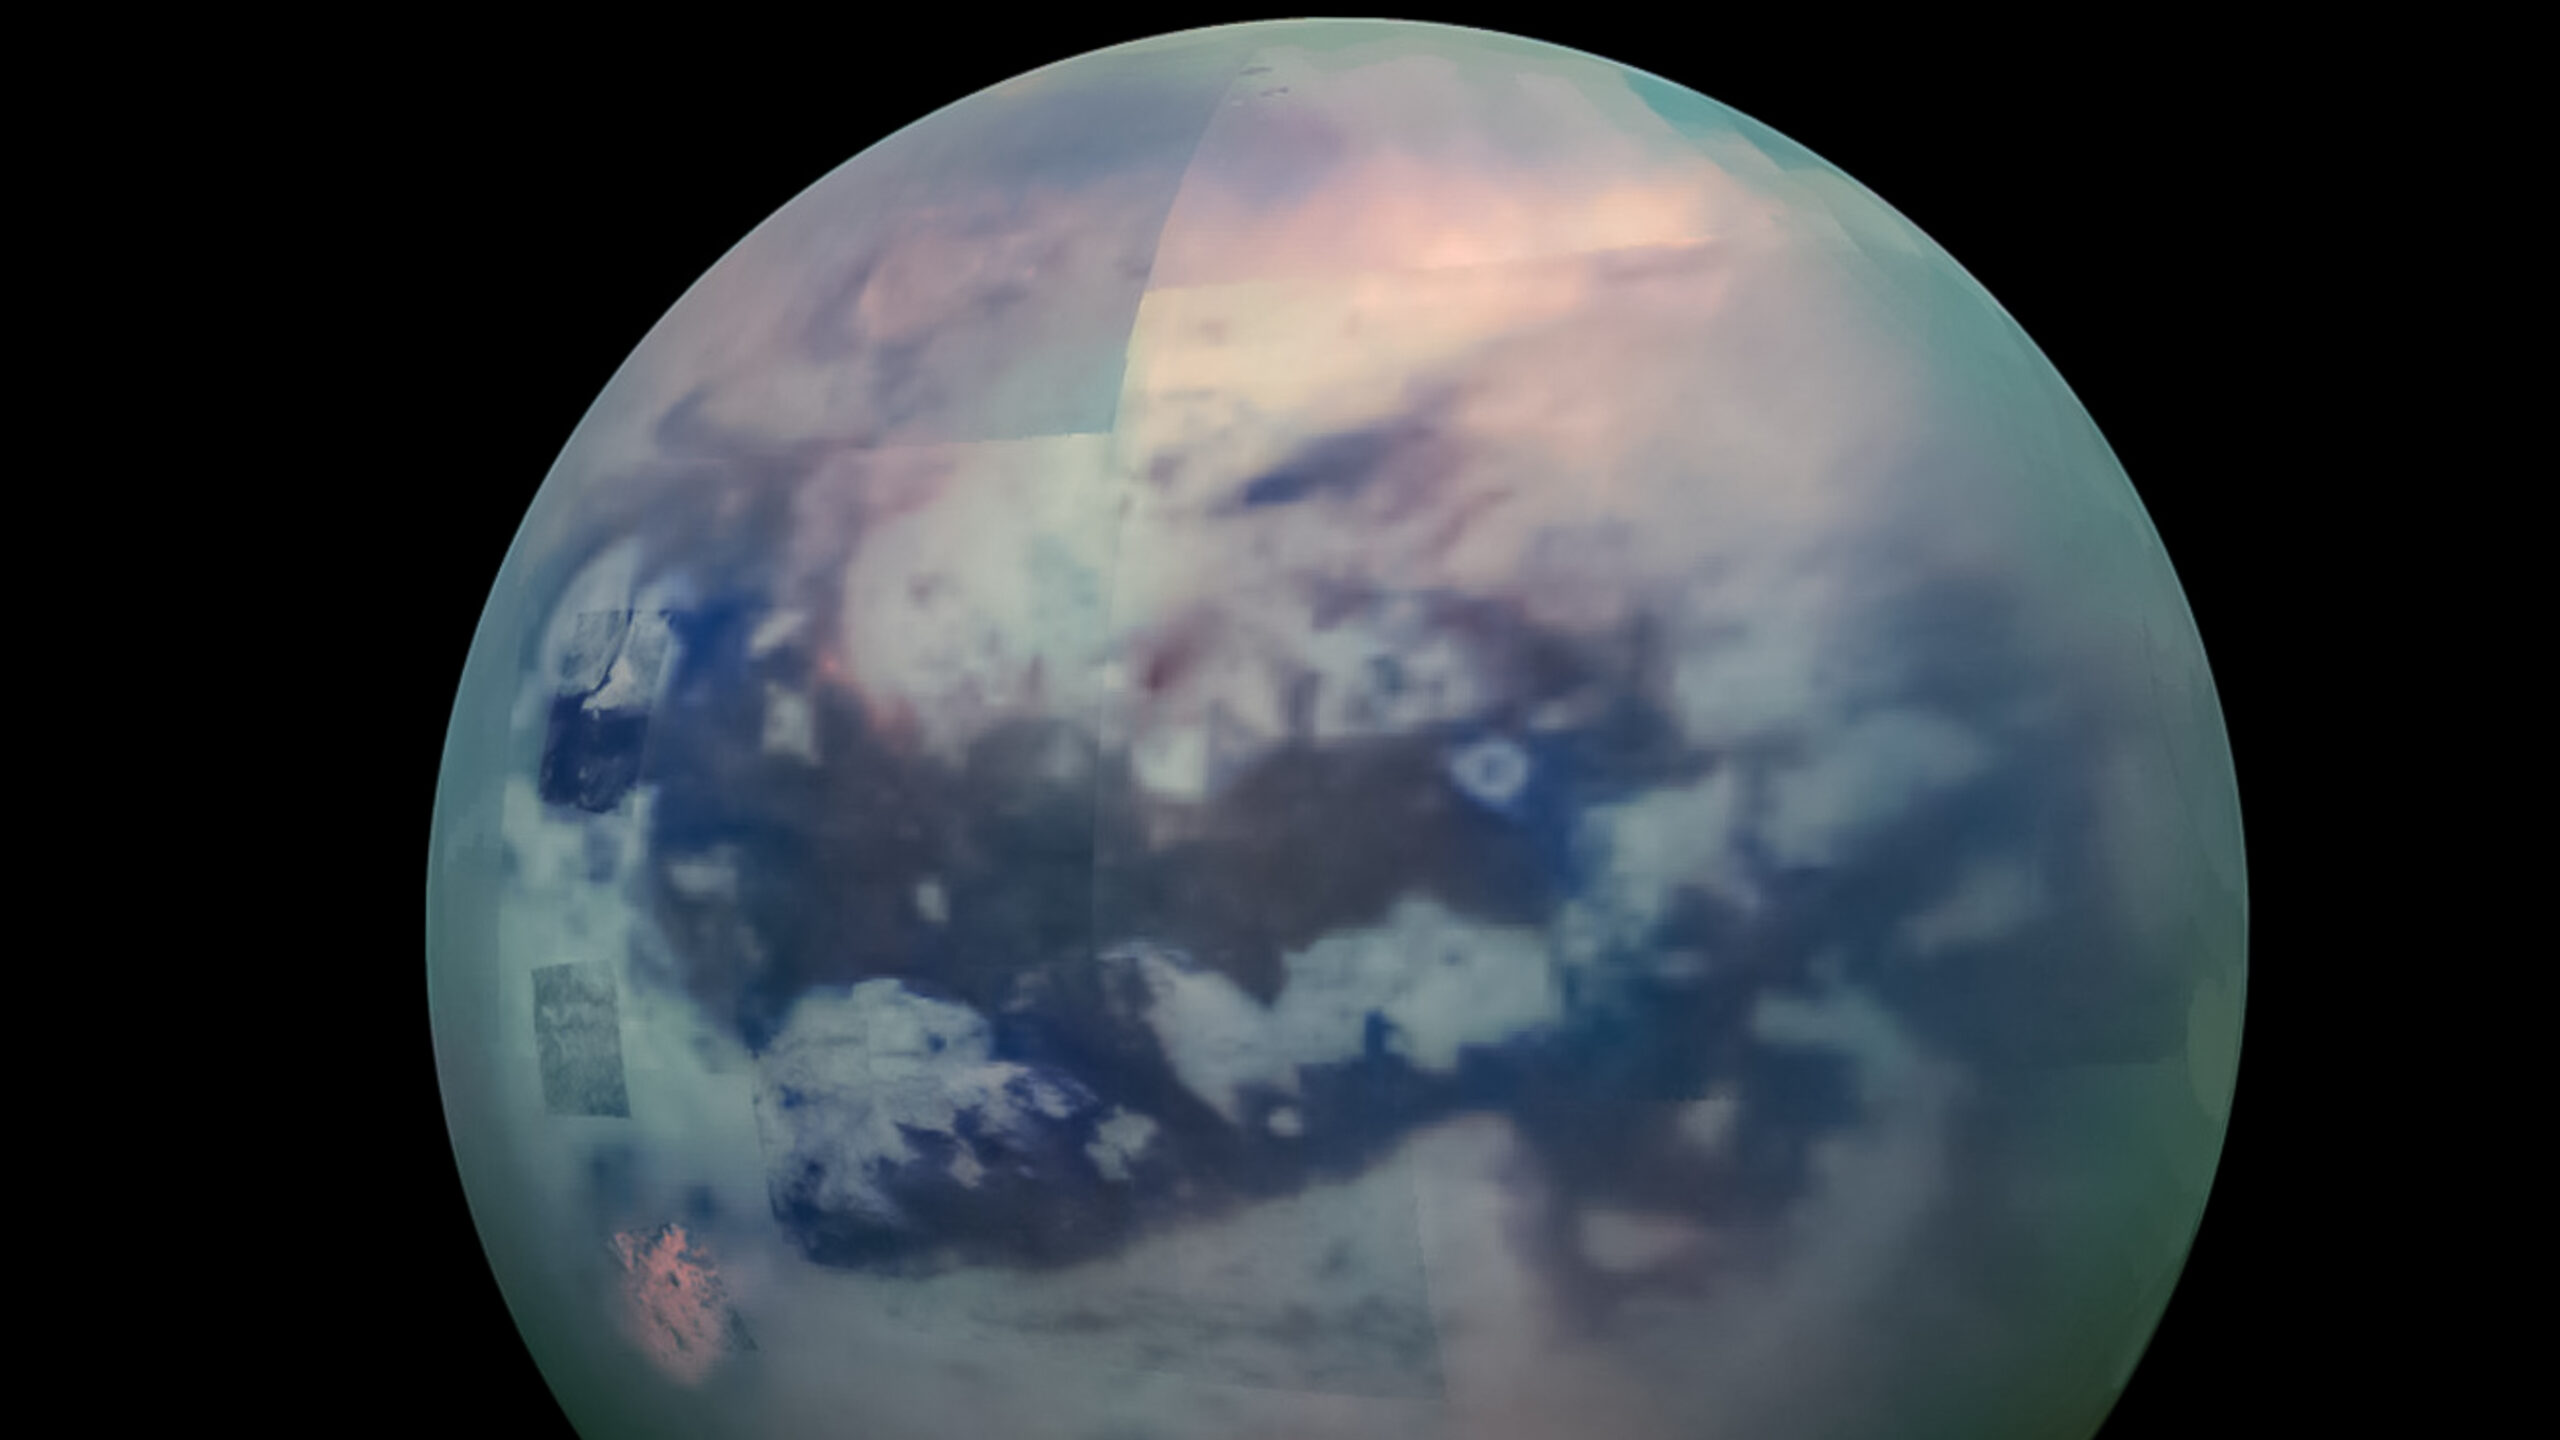 No debería existir: la sonda espacial Cassini encuentra una extraña nube en la luna Titán